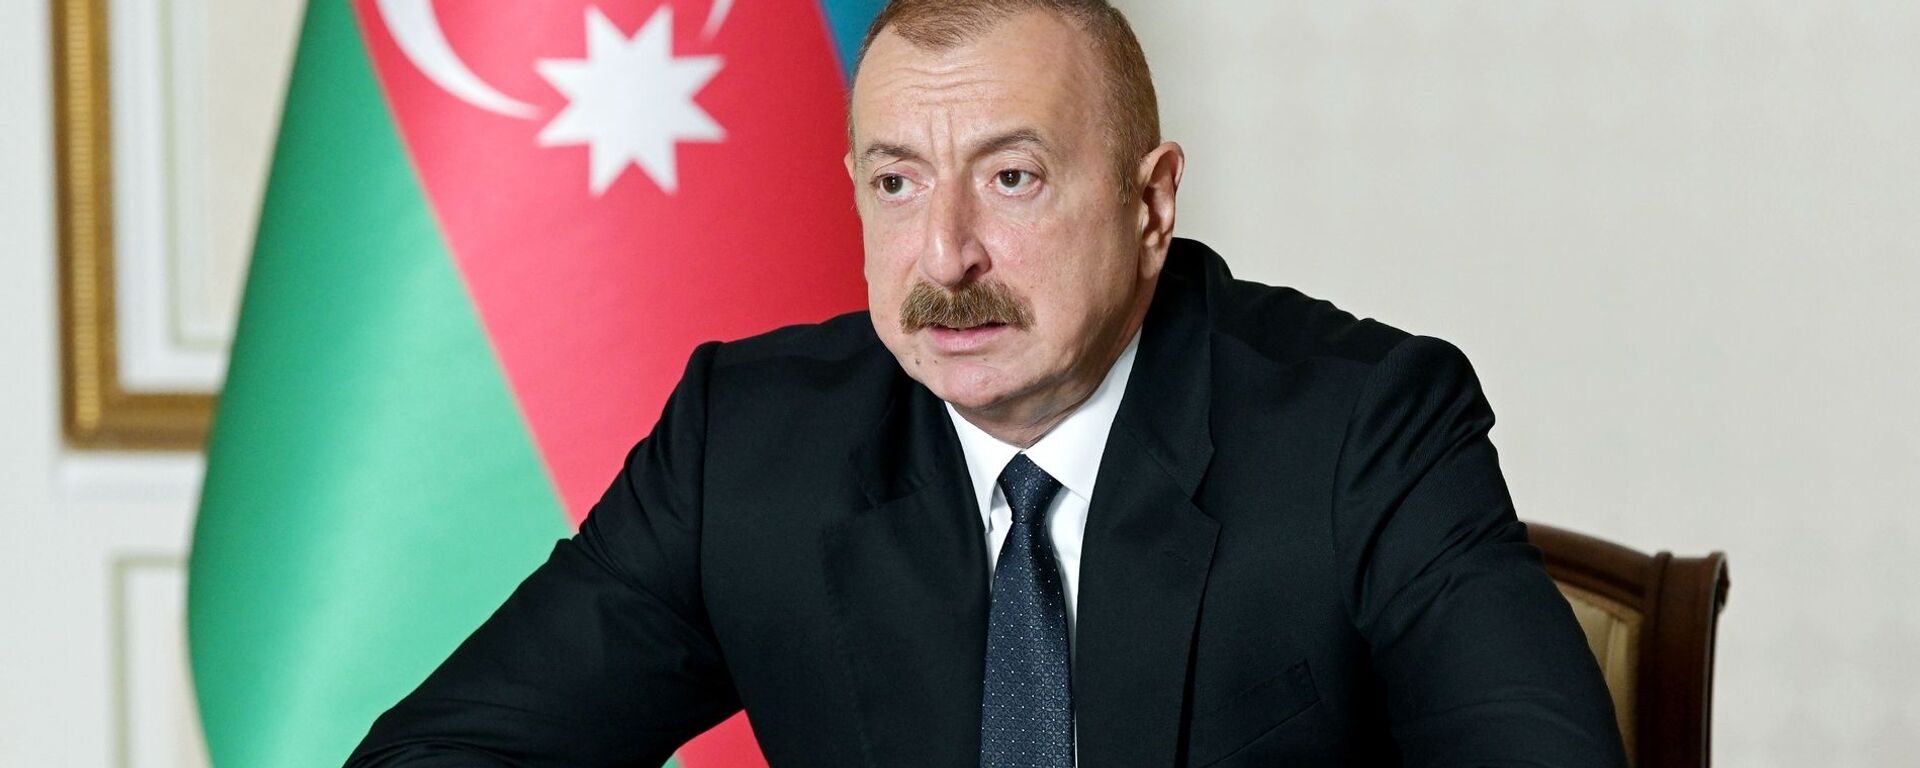 Azerbaijani President Ilham Aliyev - Sputnik International, 1920, 13.04.2021